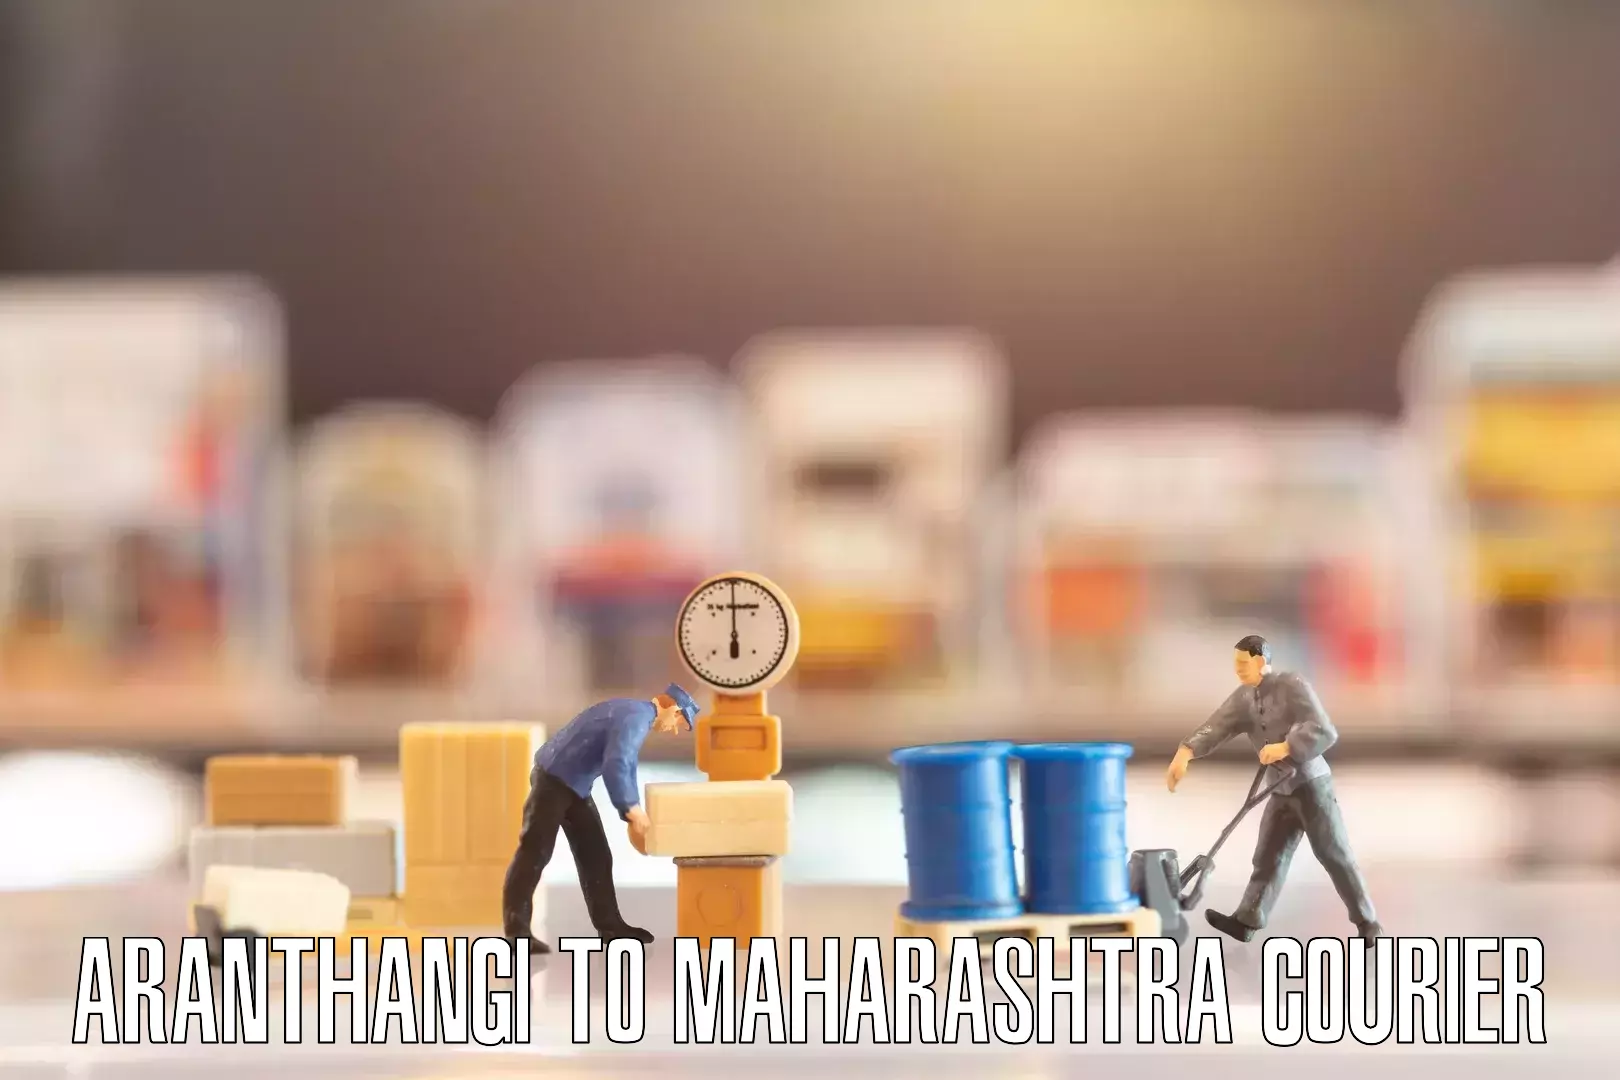 Furniture handling services Aranthangi to Mumbai Port